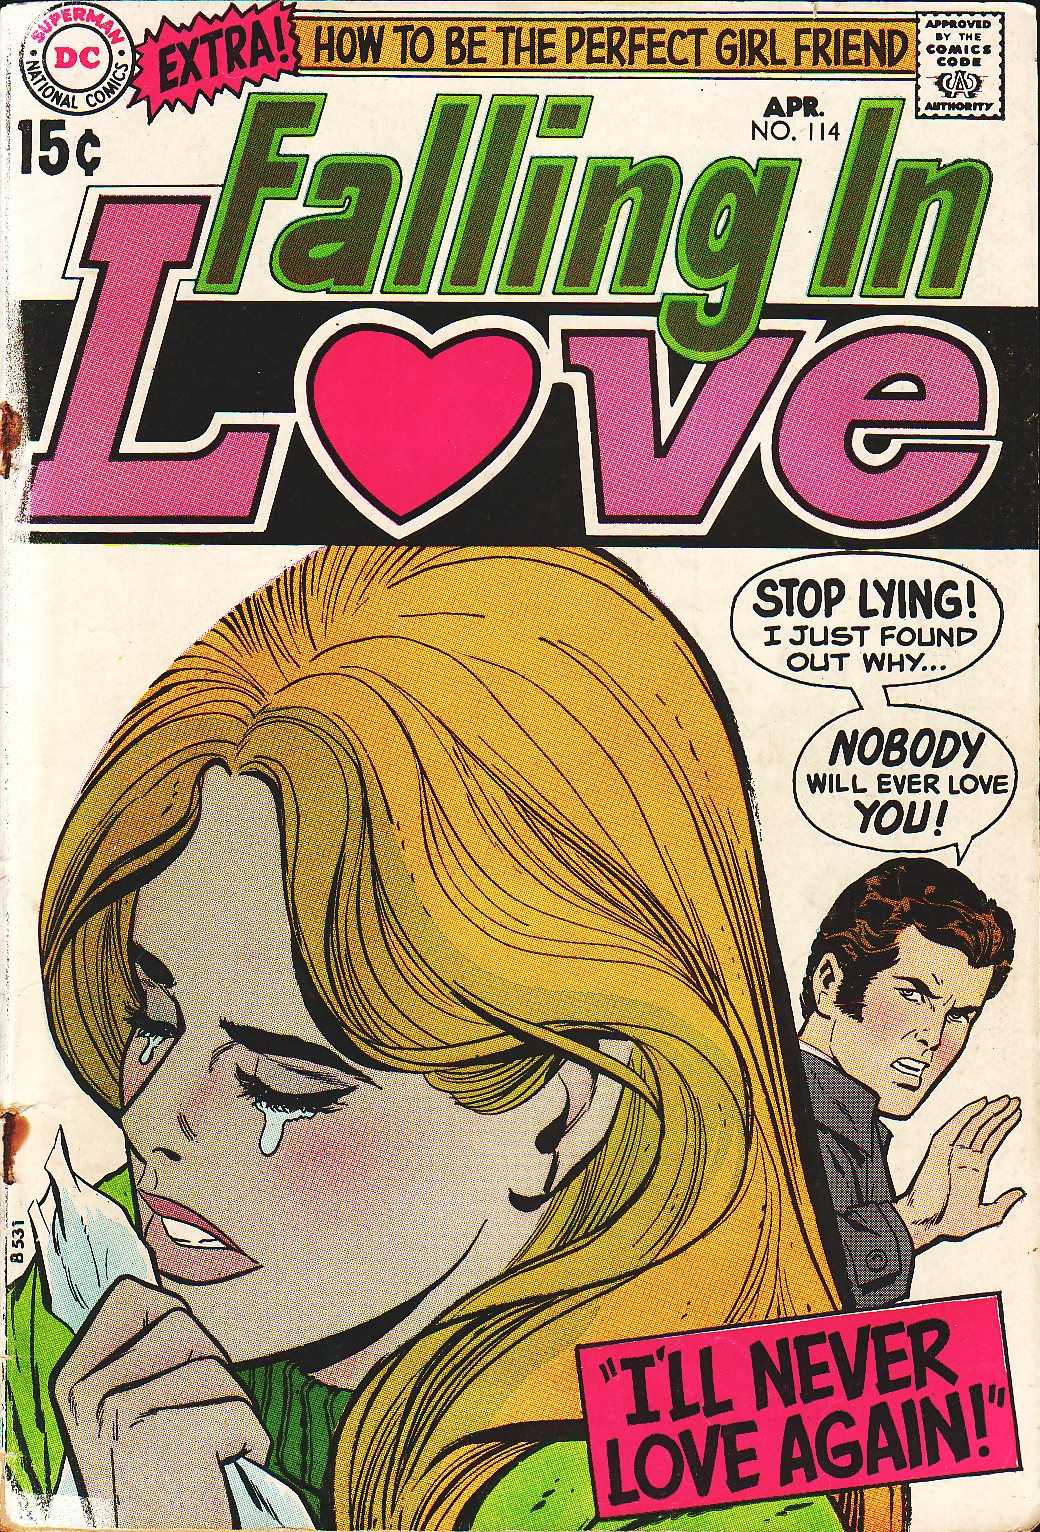 Issue love. Falling in Love комикс. Love-114. Haunt - Falling in Love. No Falling in Love.